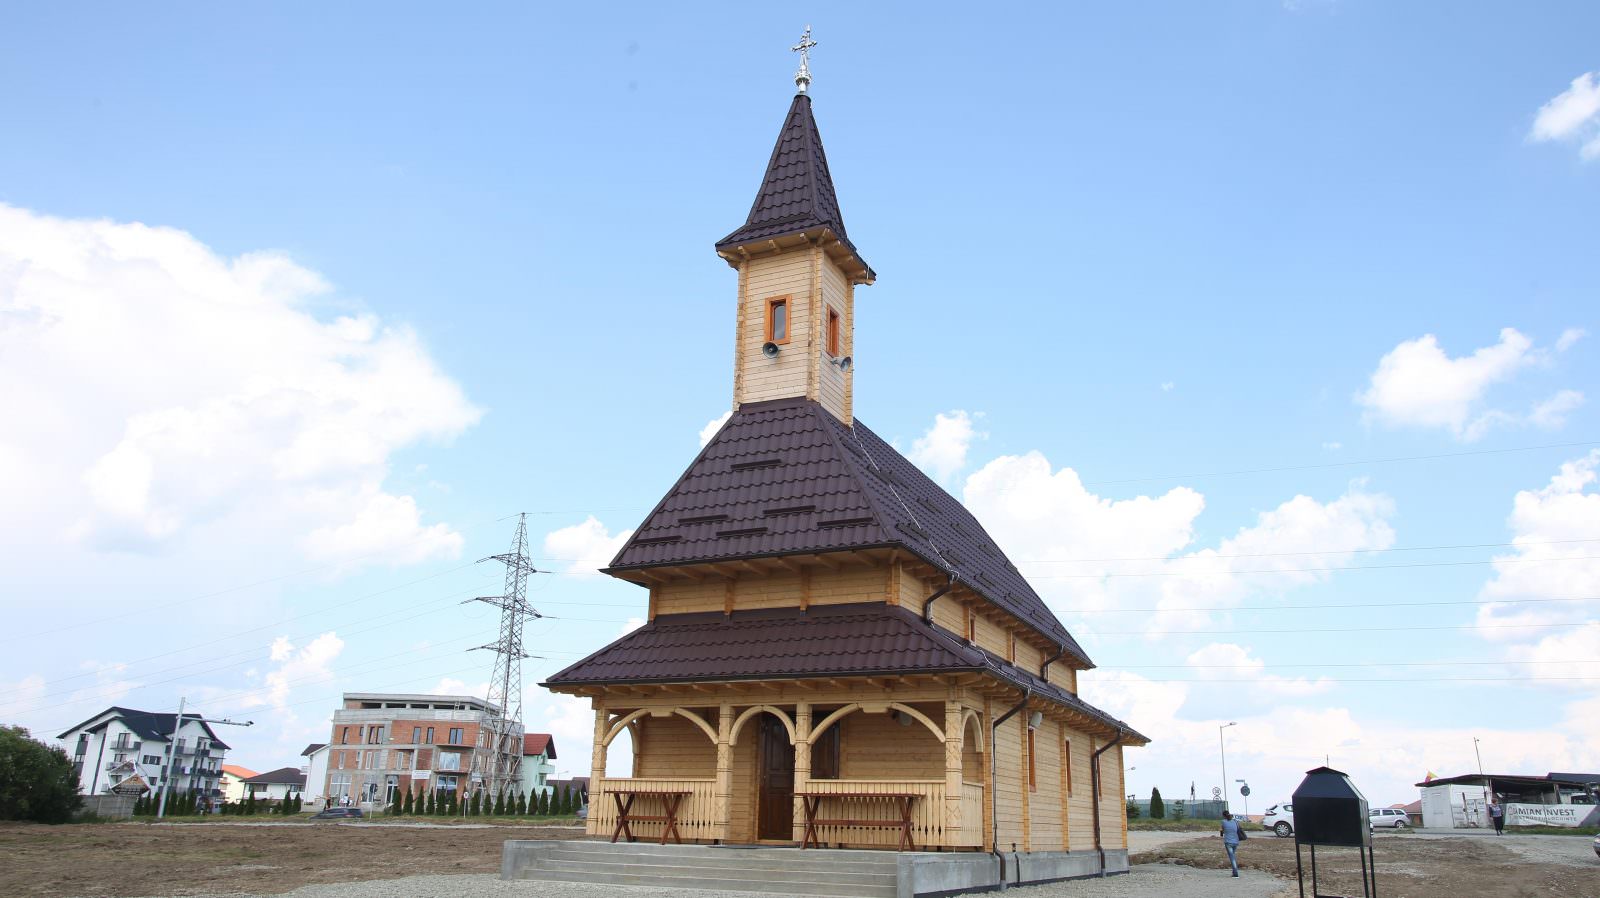 foto - biserica din cartierul arhitecților, binecuvântată - urmează construirea unei grădinițe